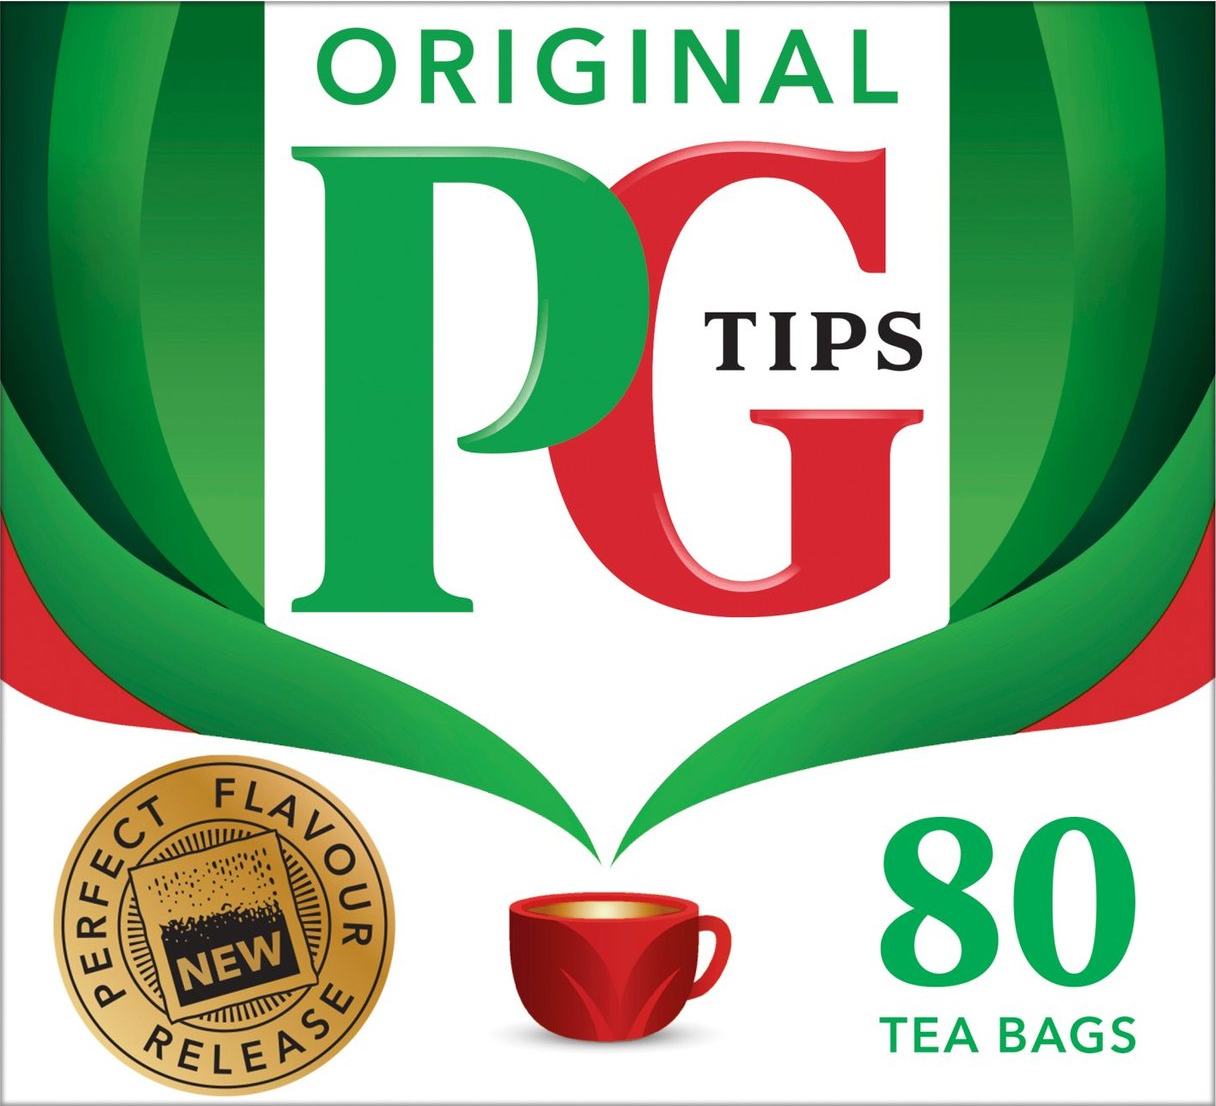 PG Tips Original Tea Bags